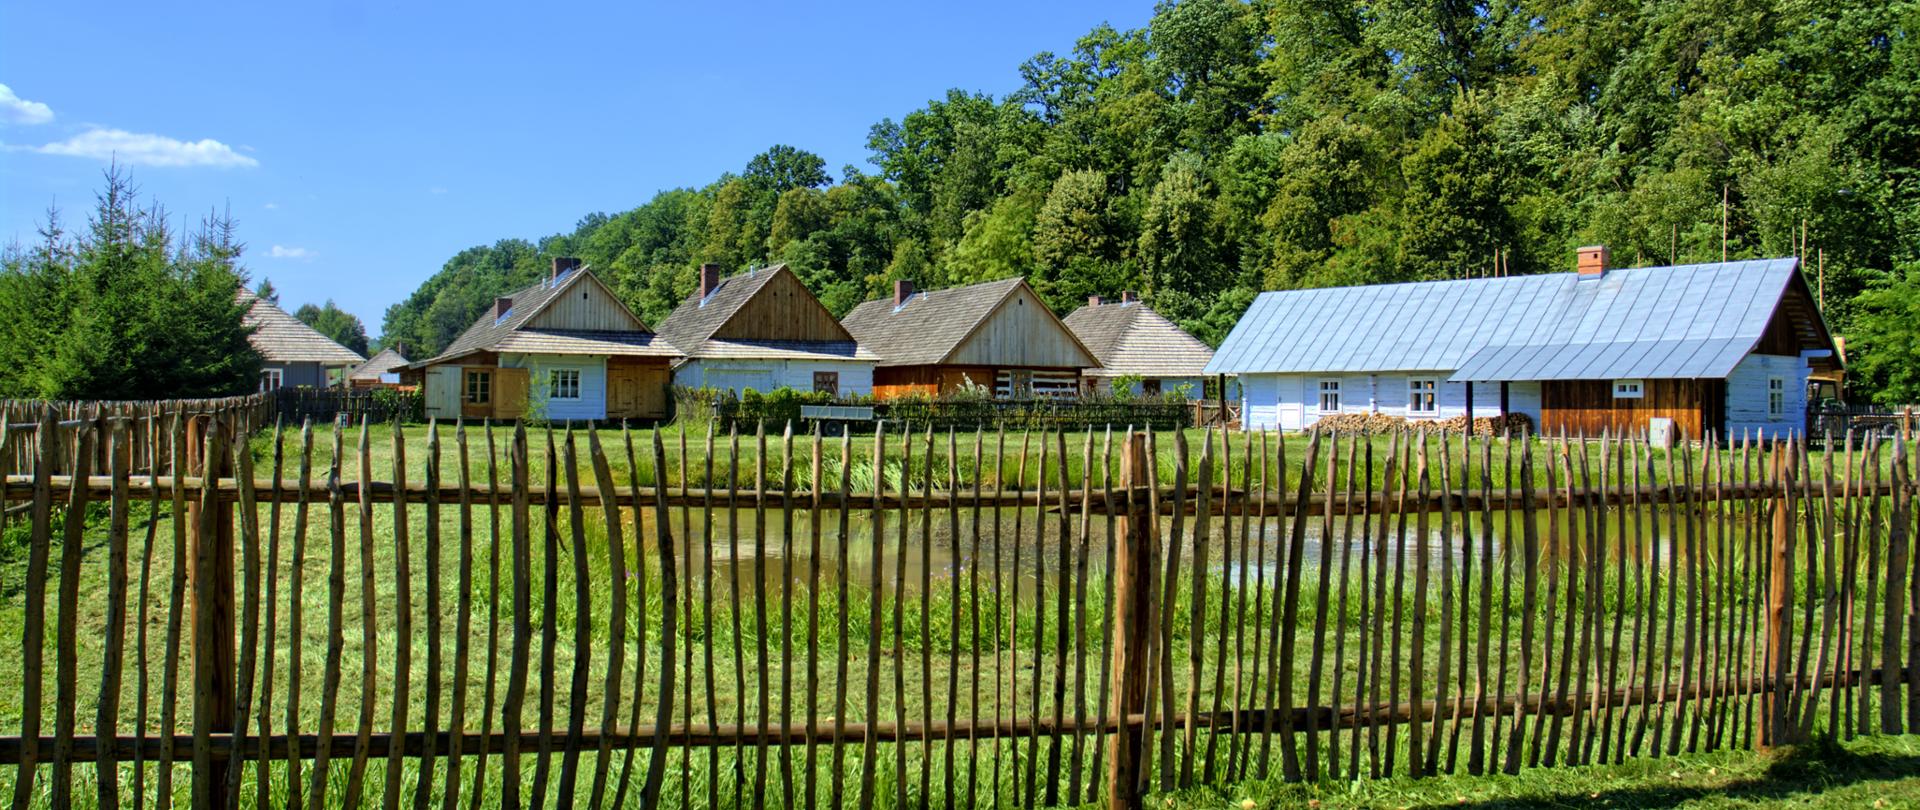 Ilustracja przykładowa Pixabay. Na zdjęciu kilka domków wiejskich, na pierwszym planie drewniany płot. W tle zieleń miejska.